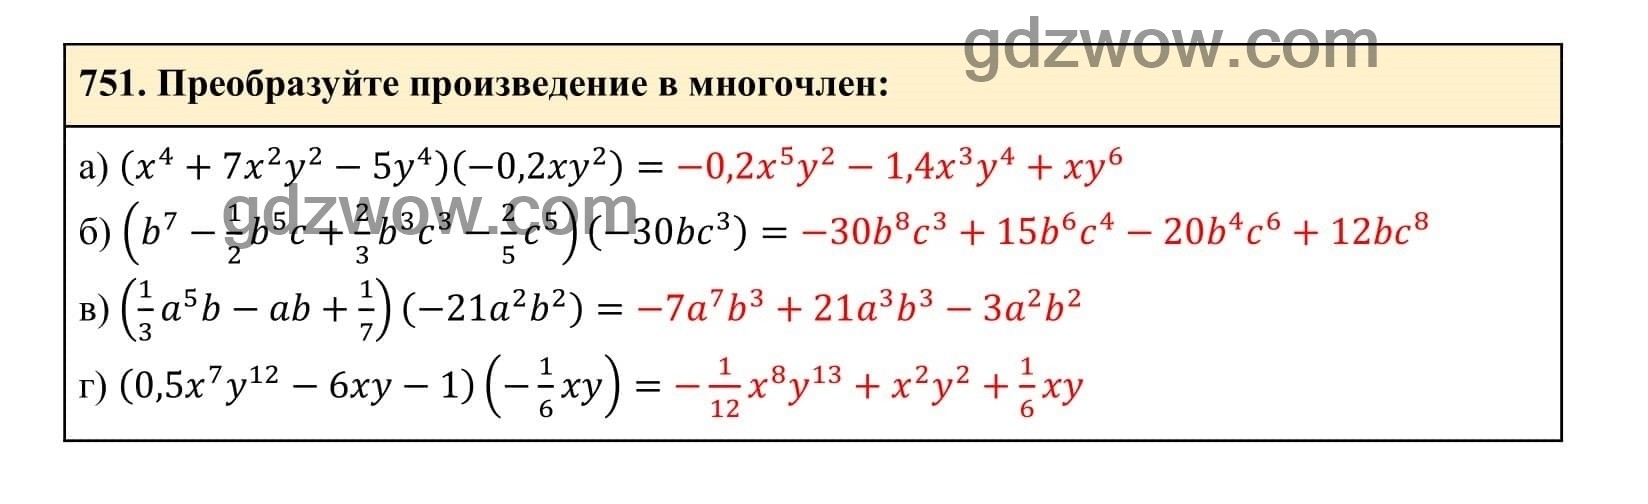 Упражнение 751 - ГДЗ по Алгебре 7 класс Учебник Макарычев (решебник) - GDZwow